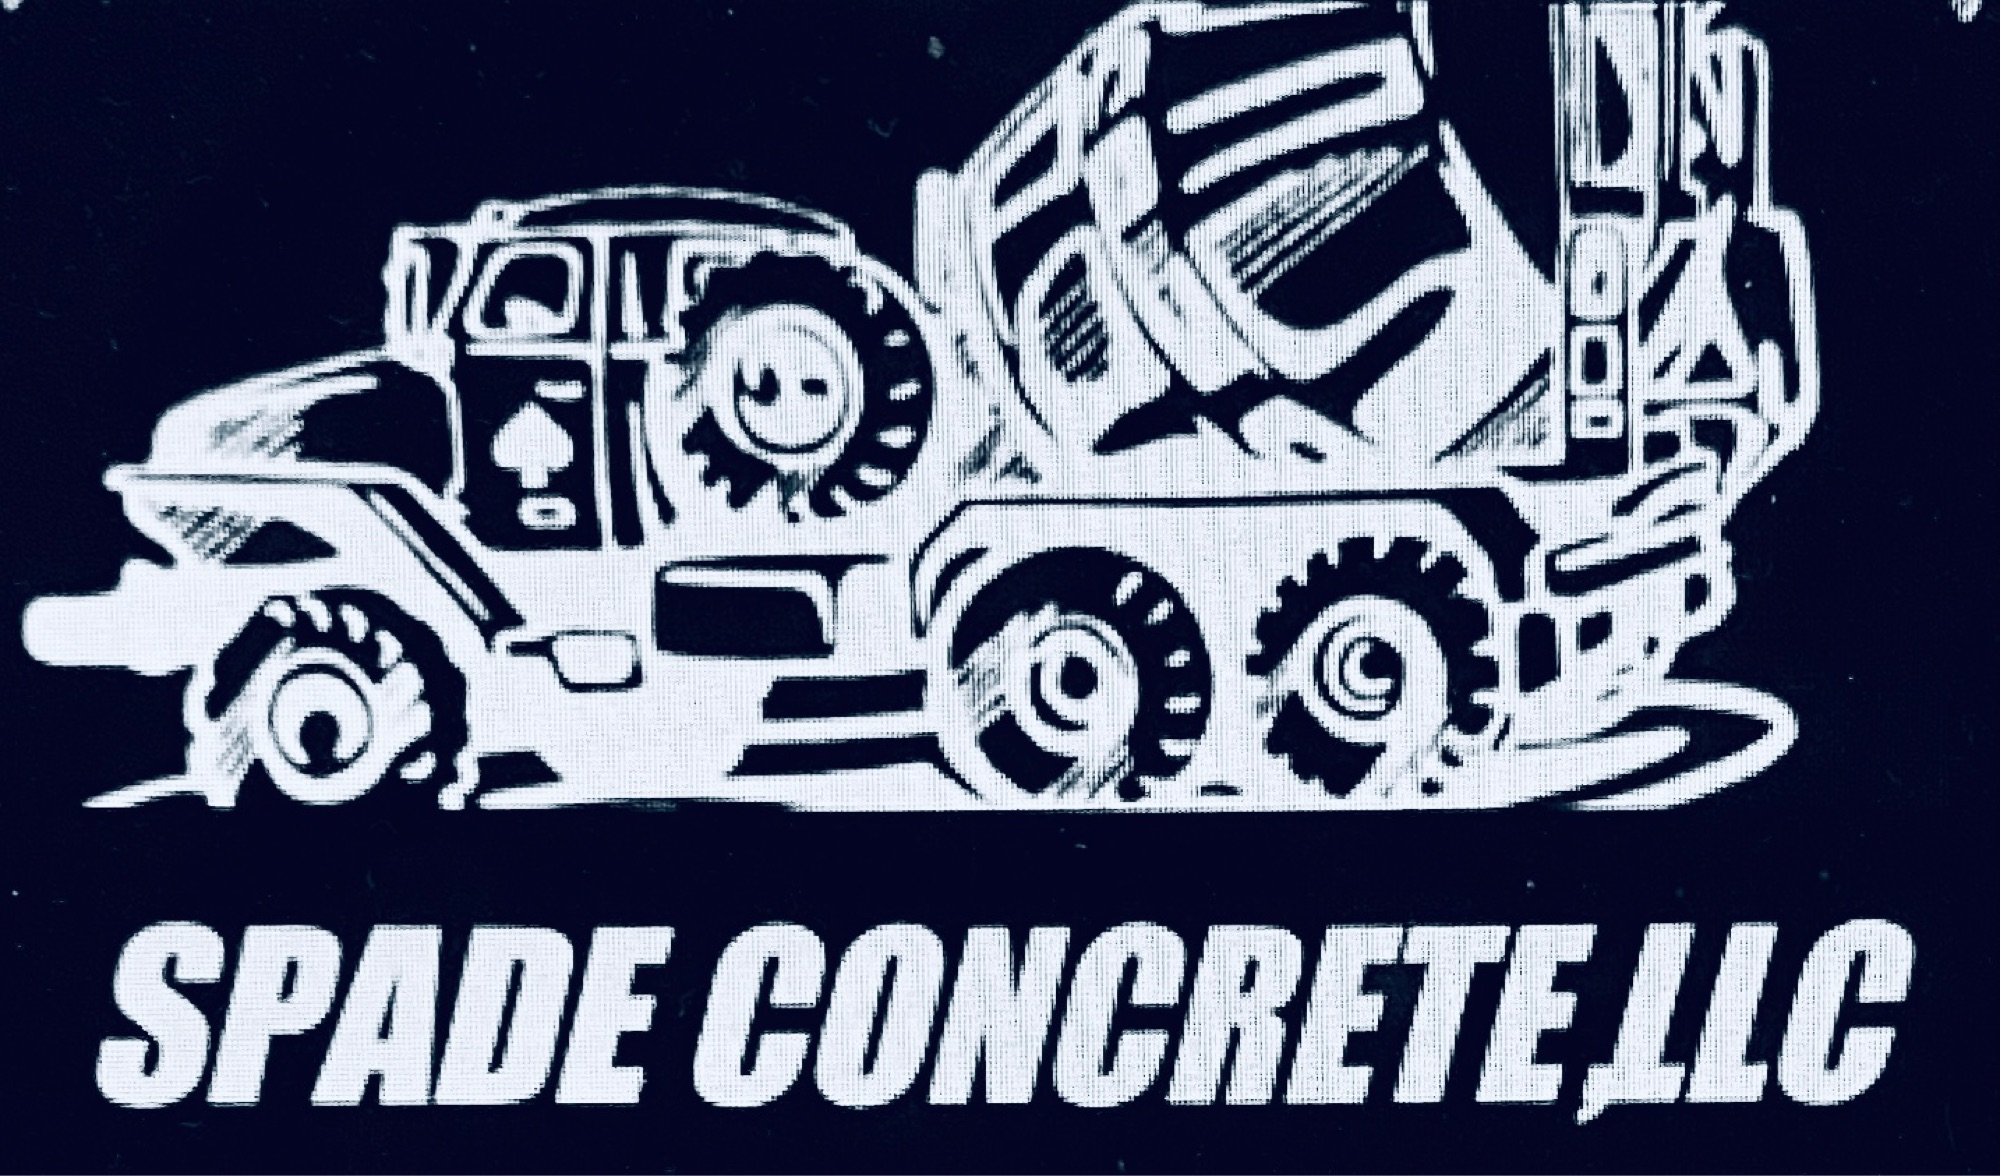 Spade Concrete, LLC Logo